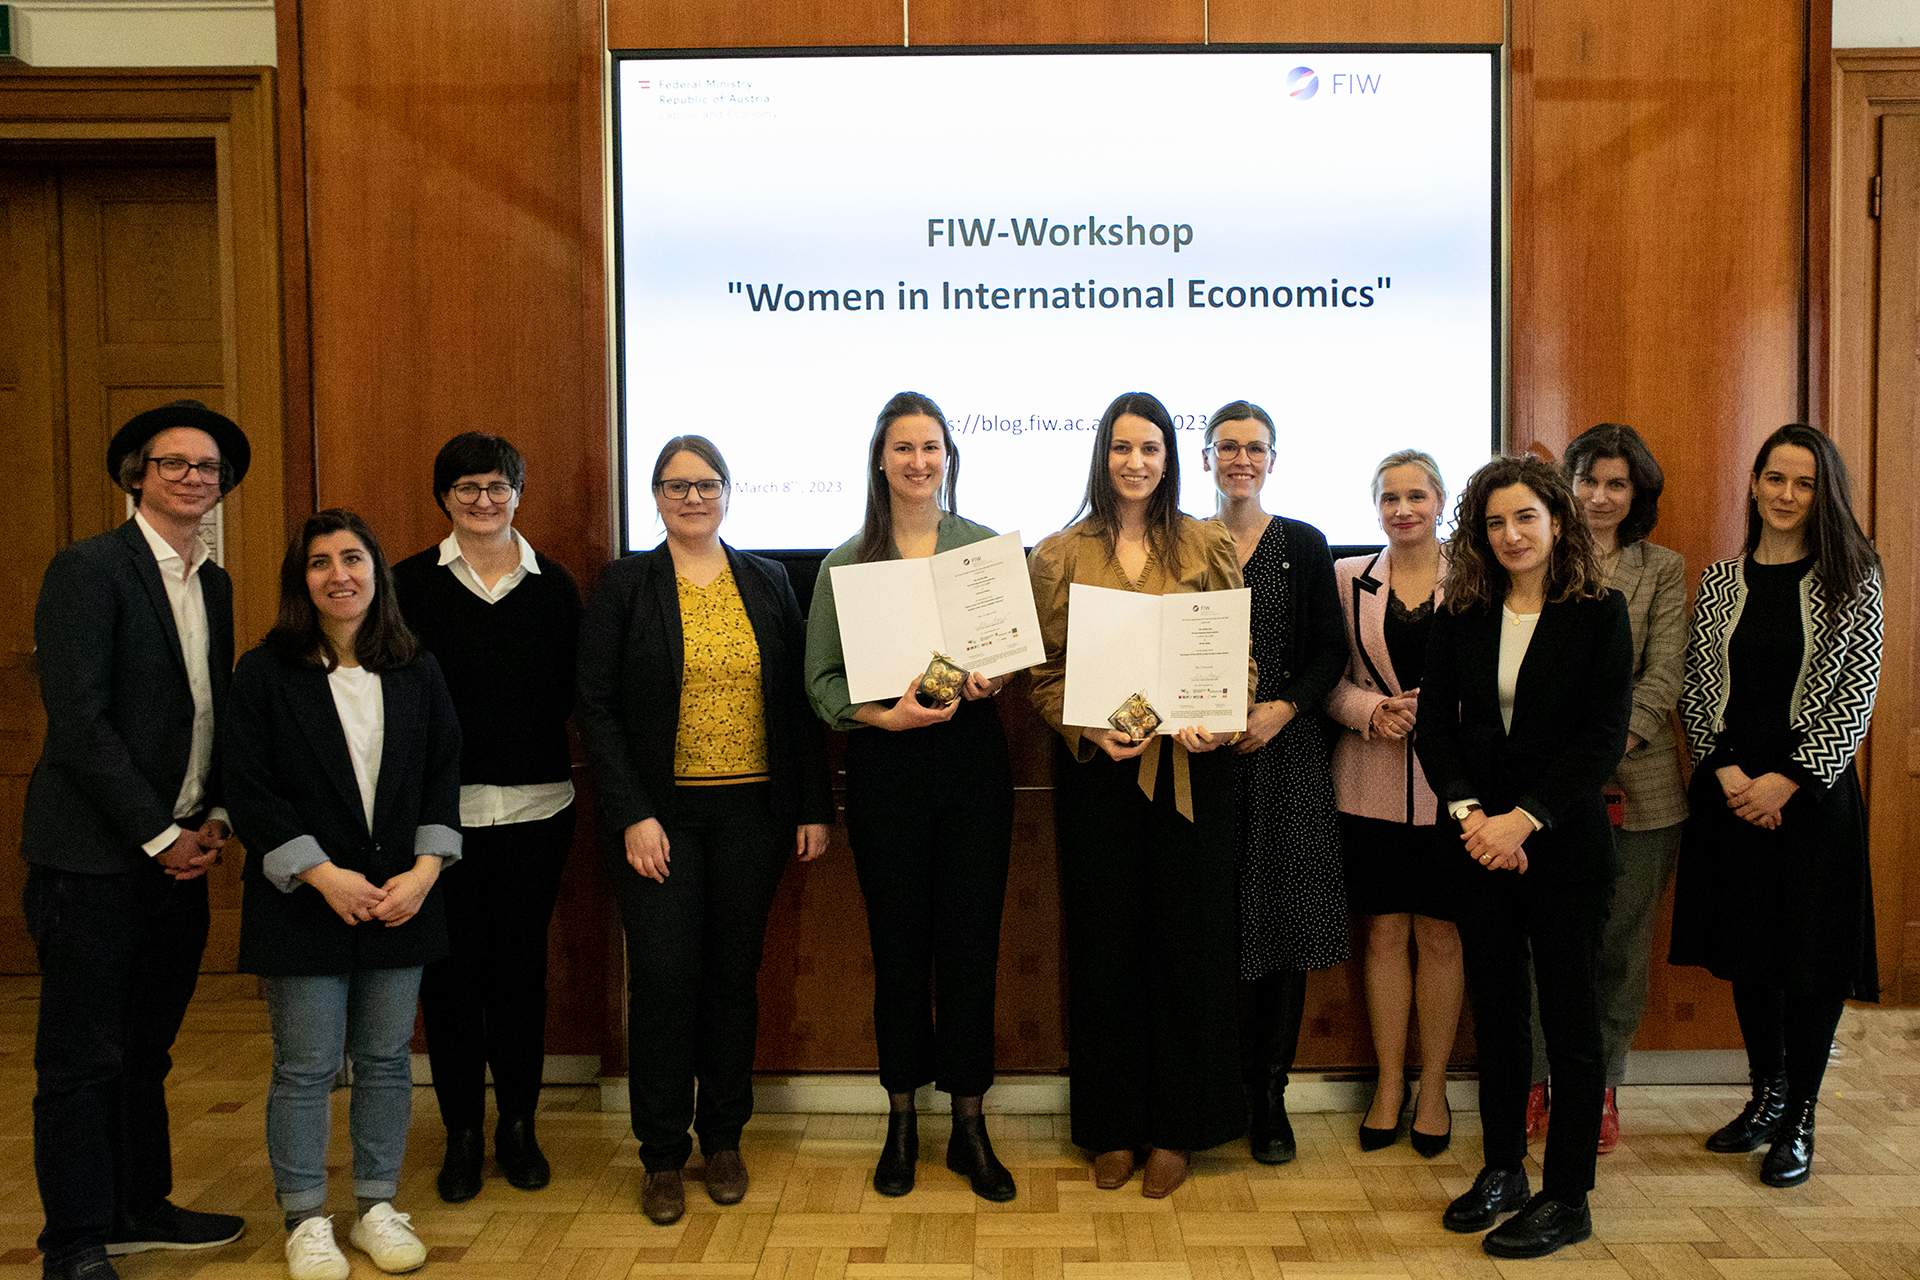 Gruppenfoto mit den Mitwirkenden des FIW-Workshop Women in International Economics